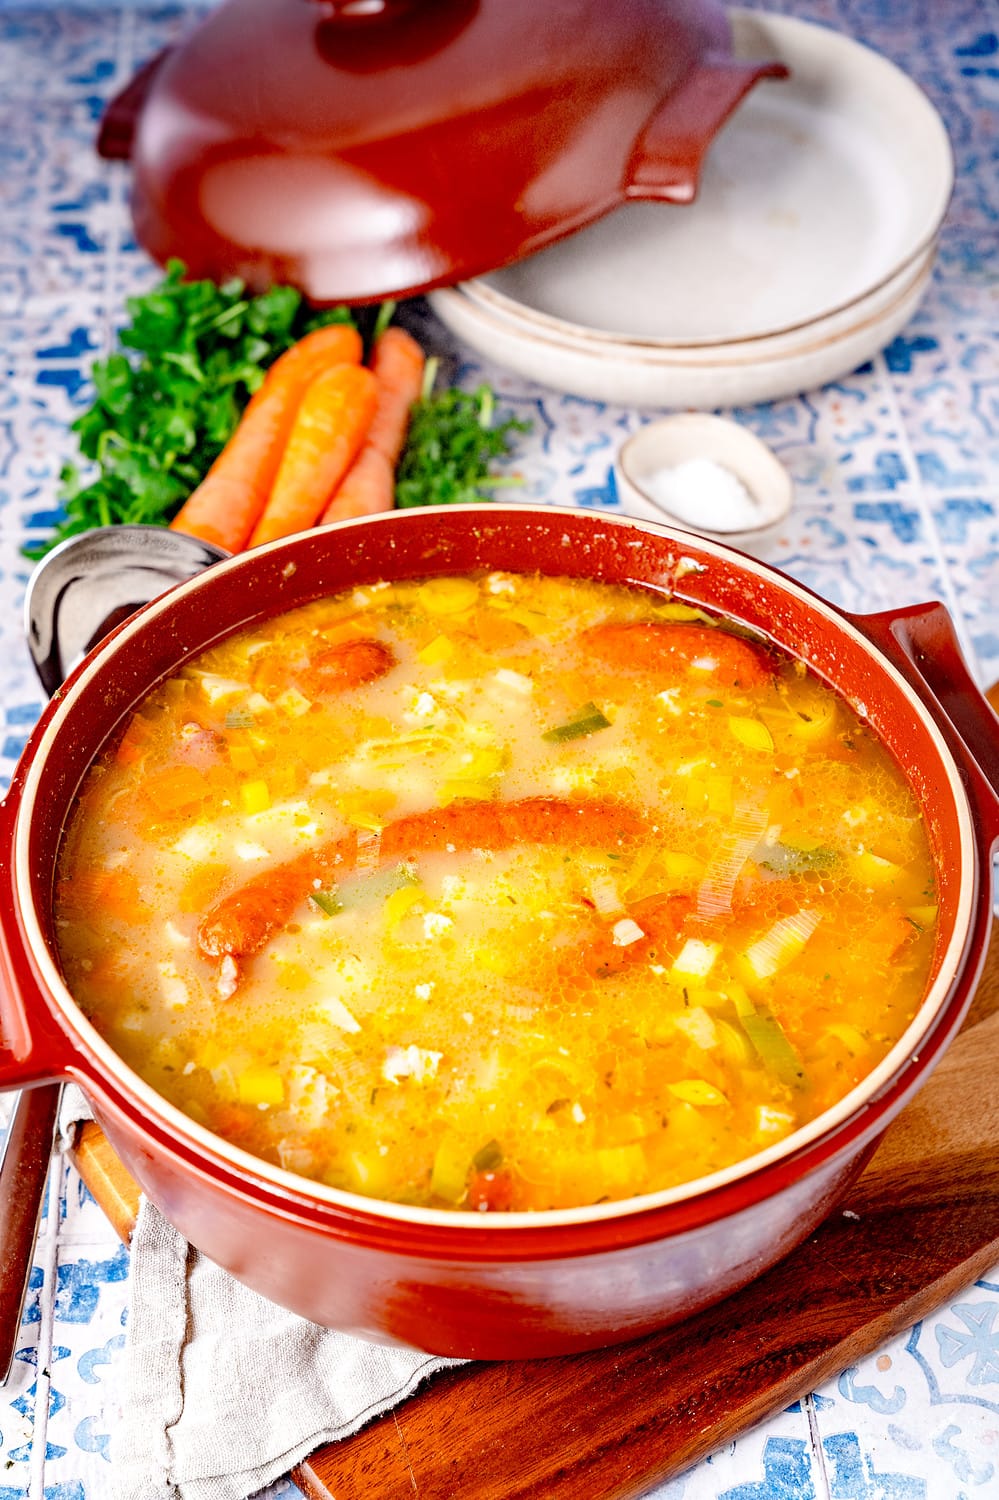 Diese schmackhafte Suppe ist an kalten Wintertagen genau das richtige.